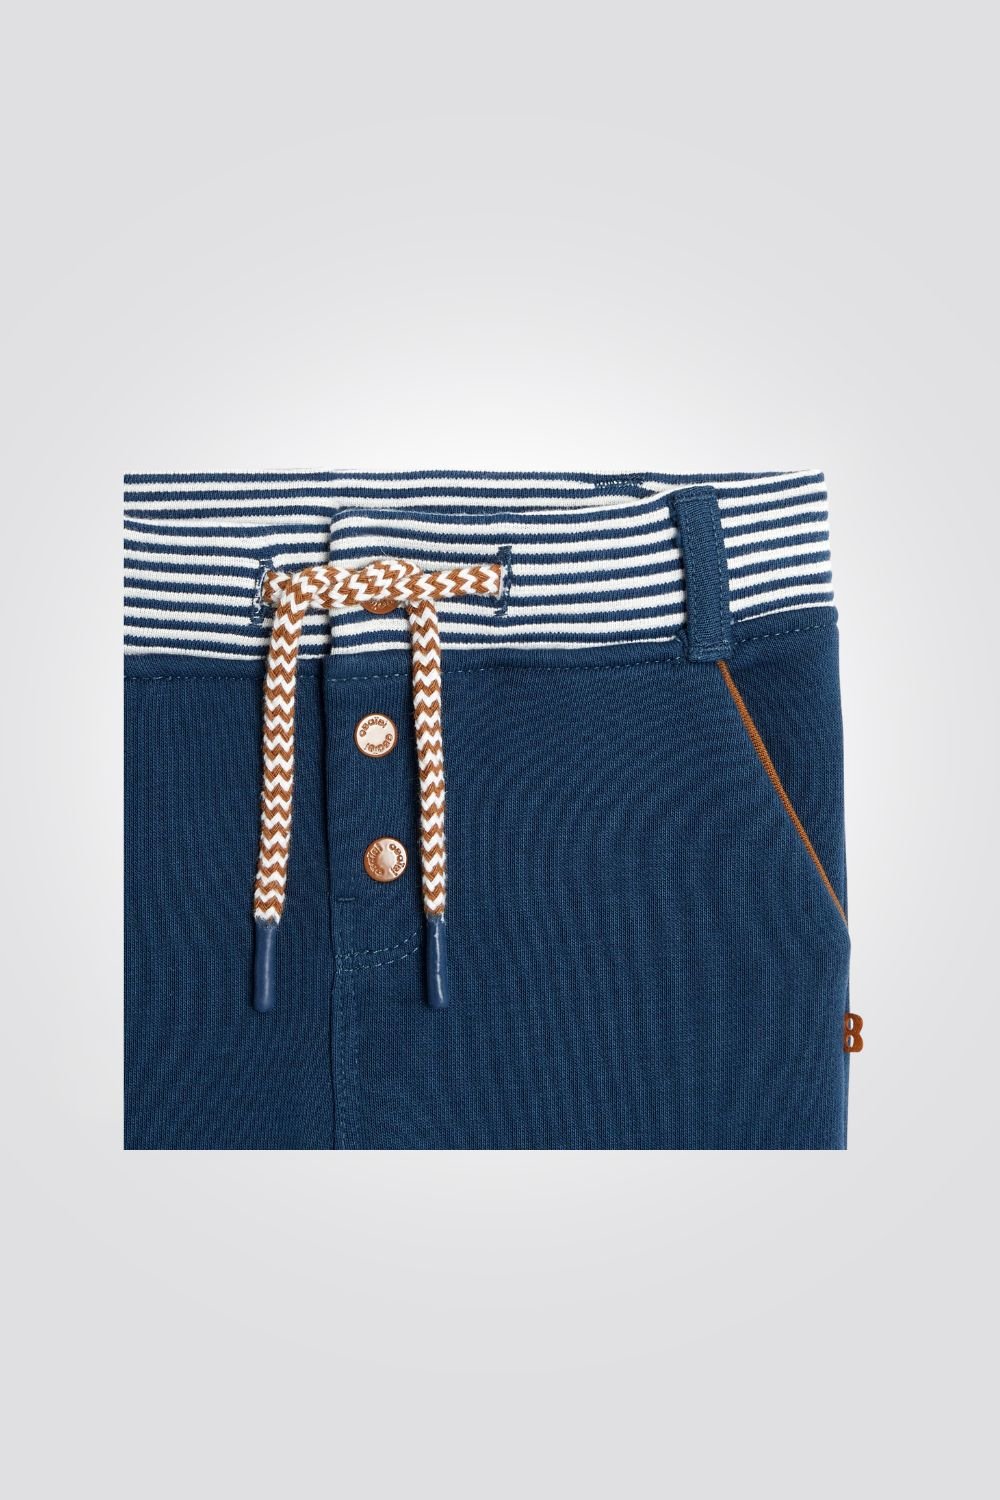 OBAIBI - מכנסי תינוקות בכחול עם חגורת גומי מפוספסת - MASHBIR//365